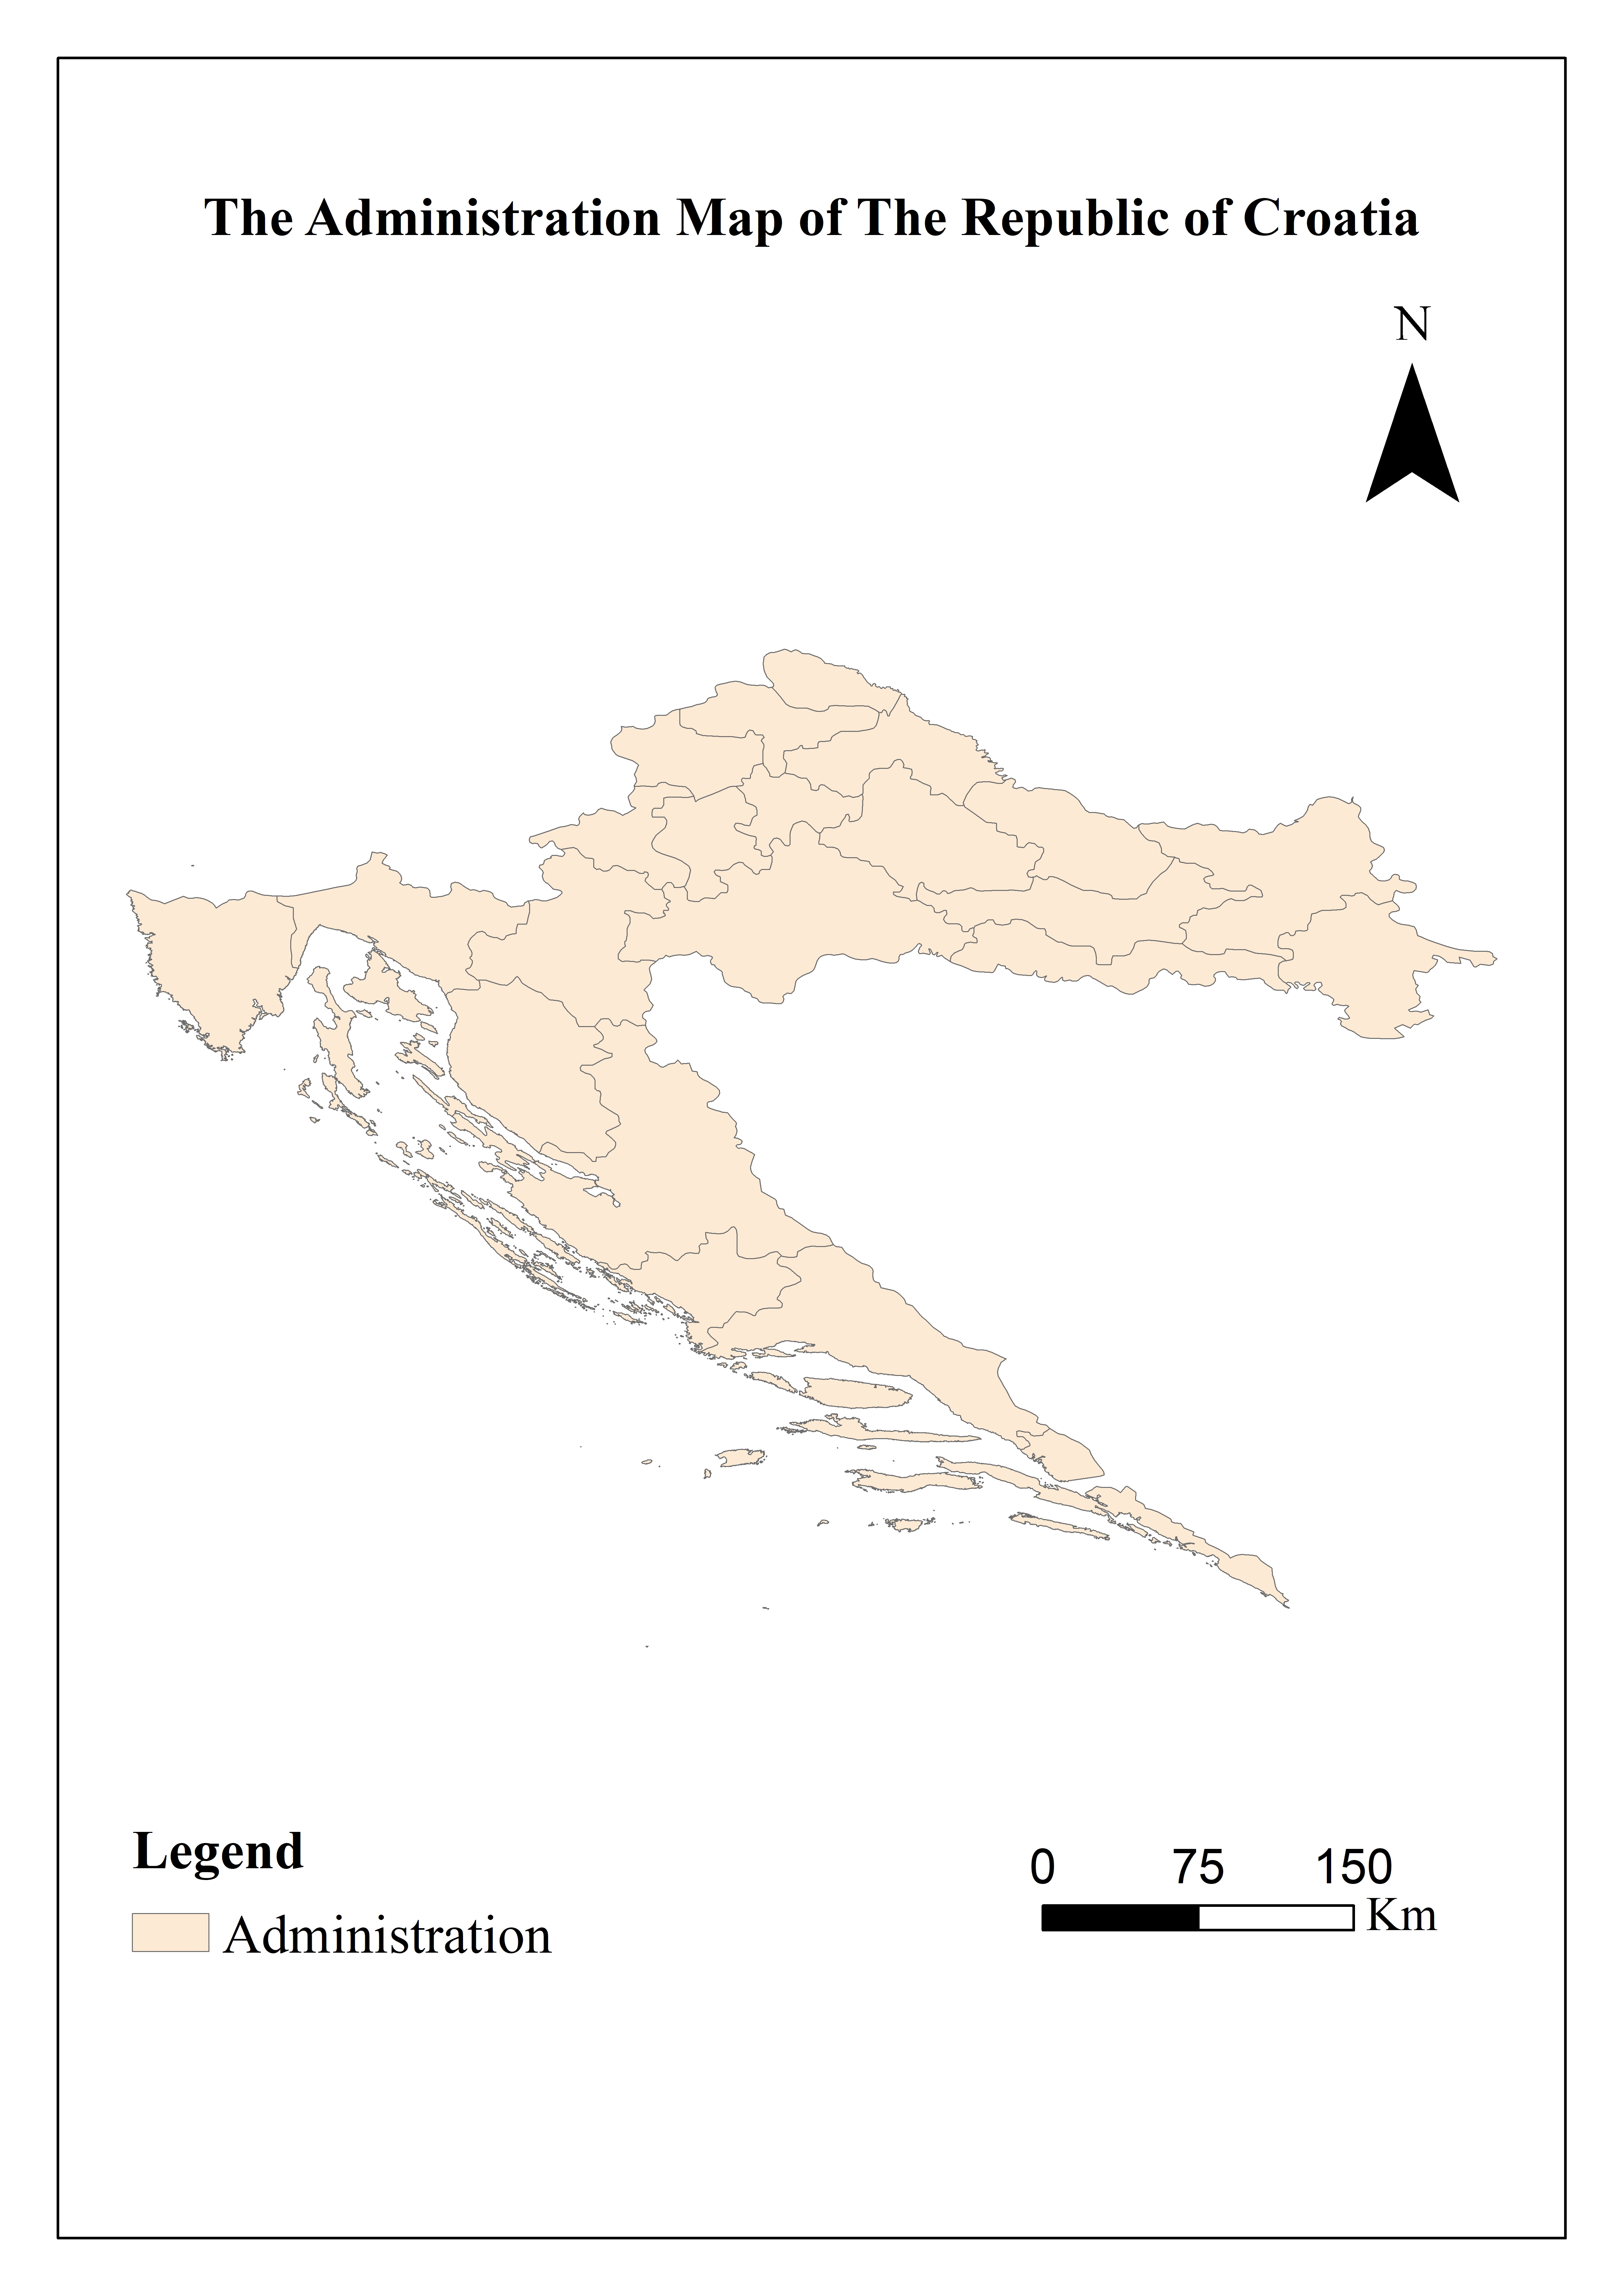 Basic national information database of The Republic of Croatia